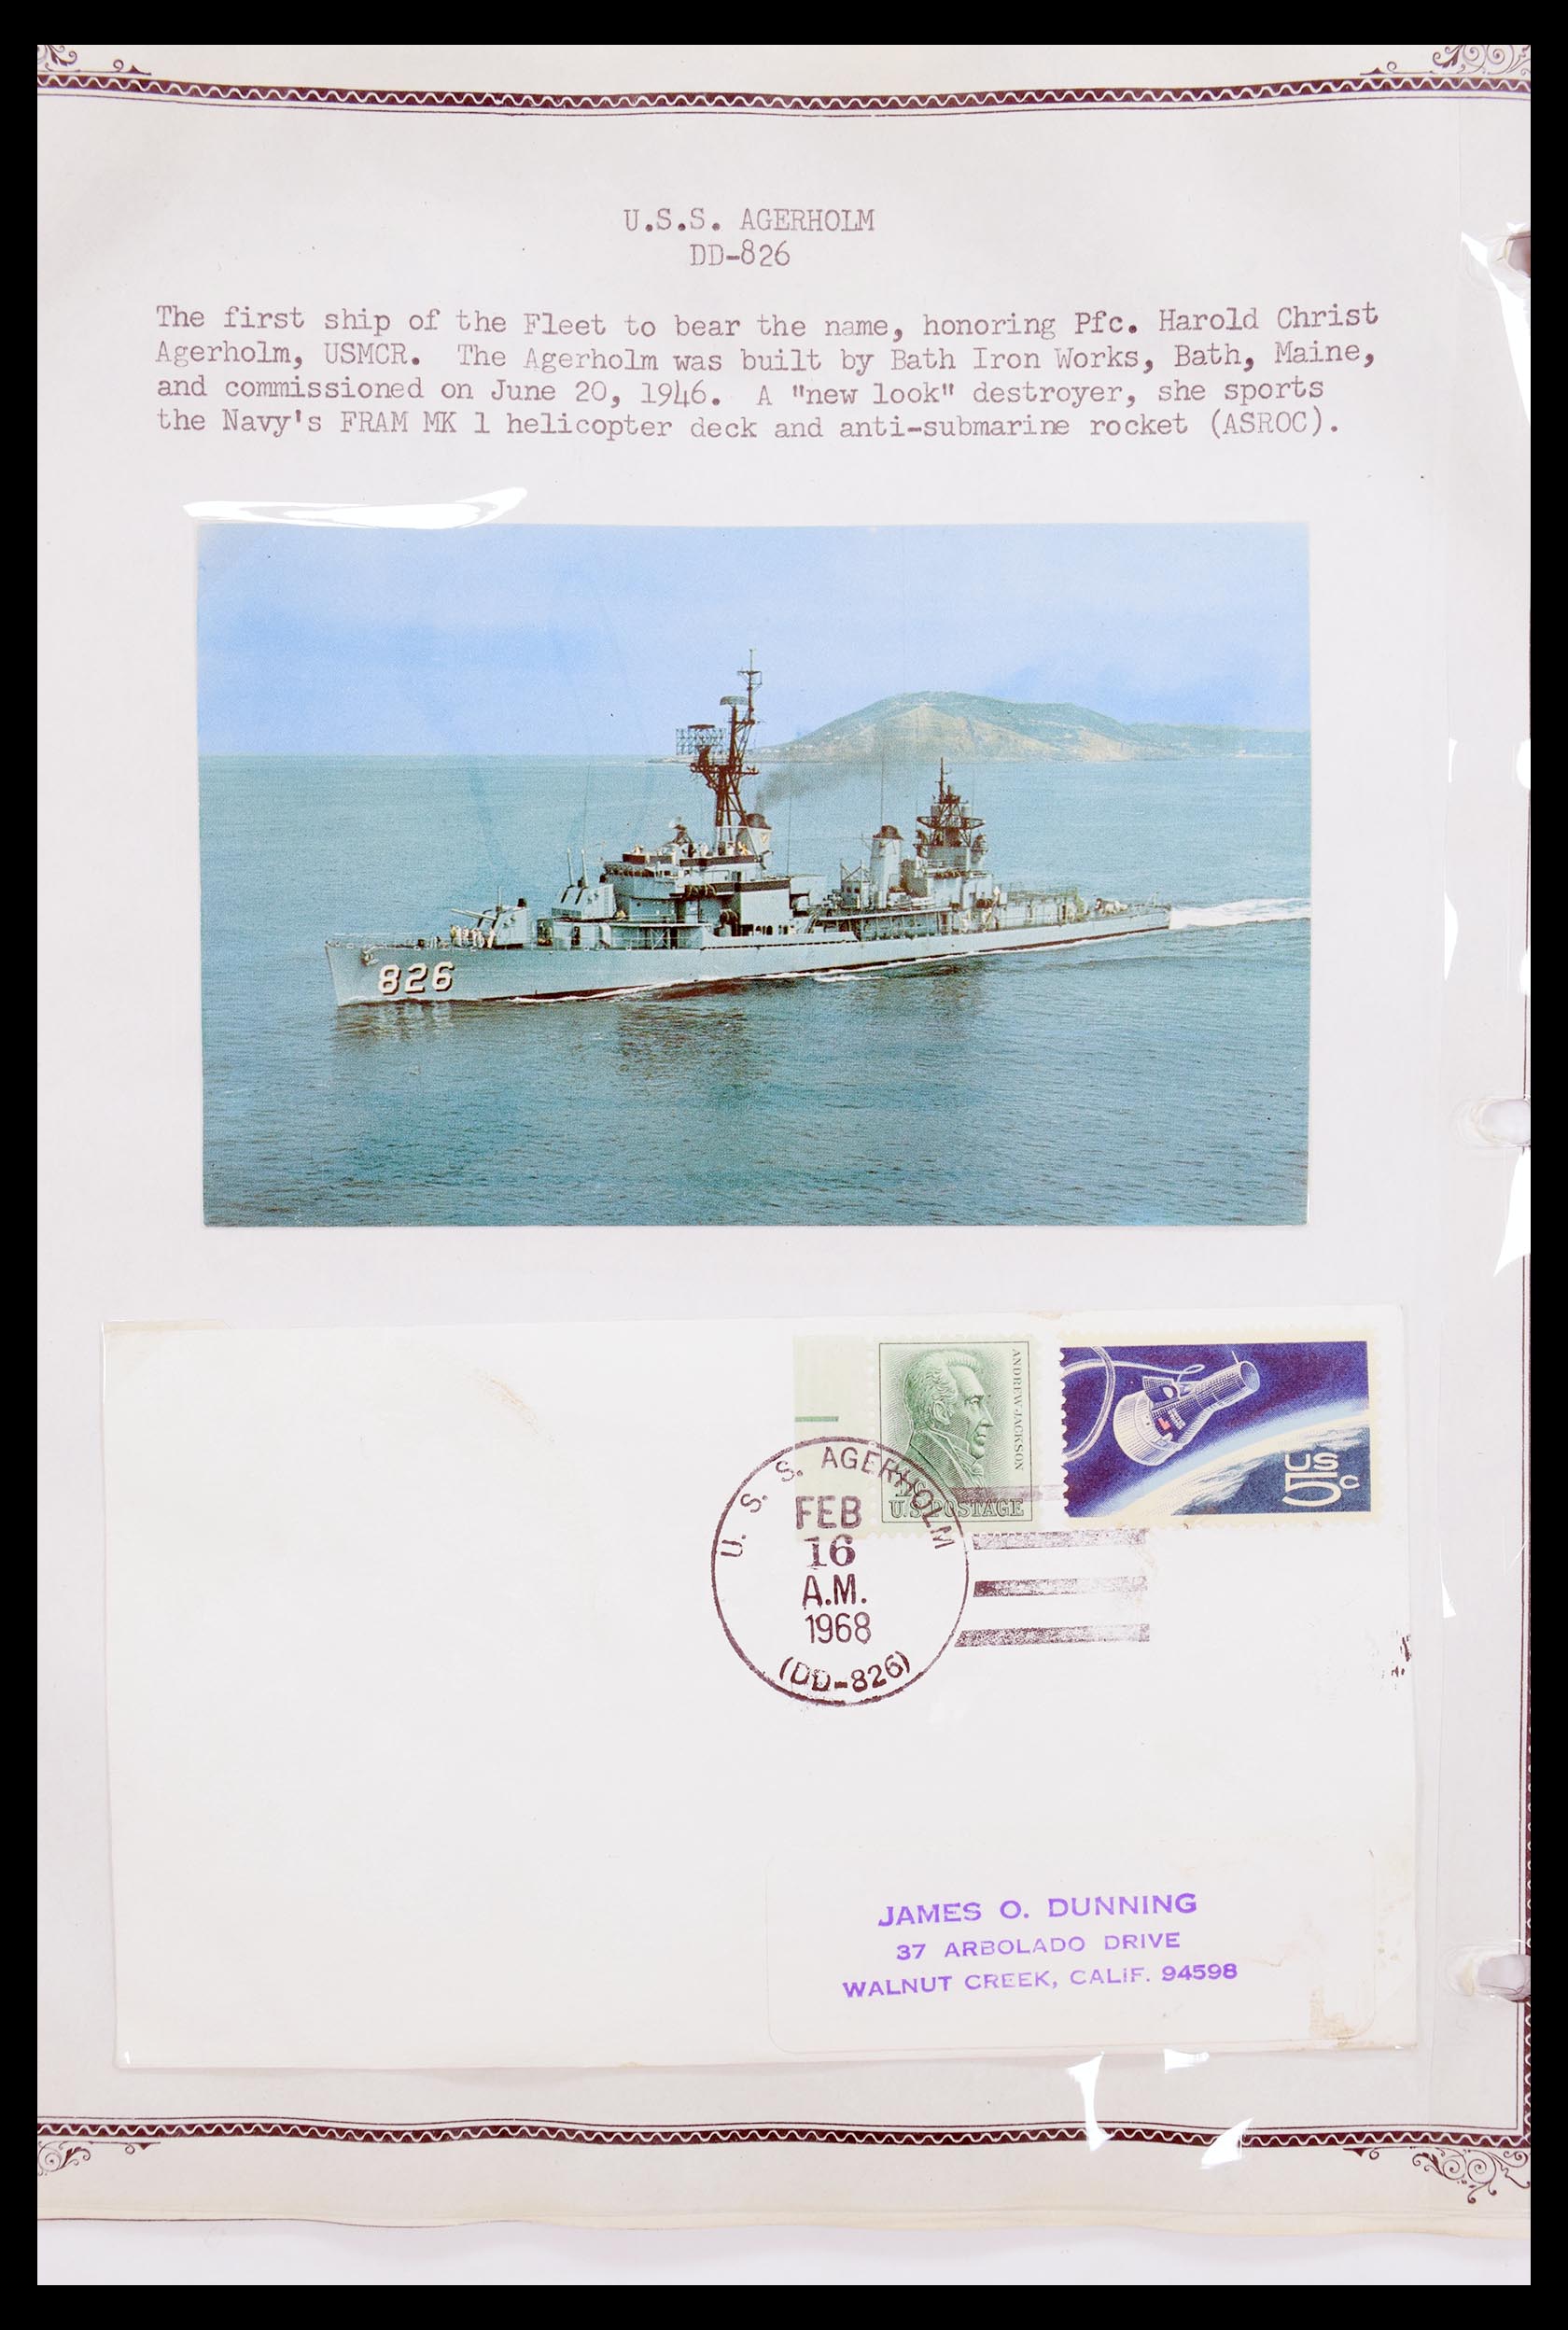 30341 052 - 30341 USA scheepspost brieven 1930-1970.